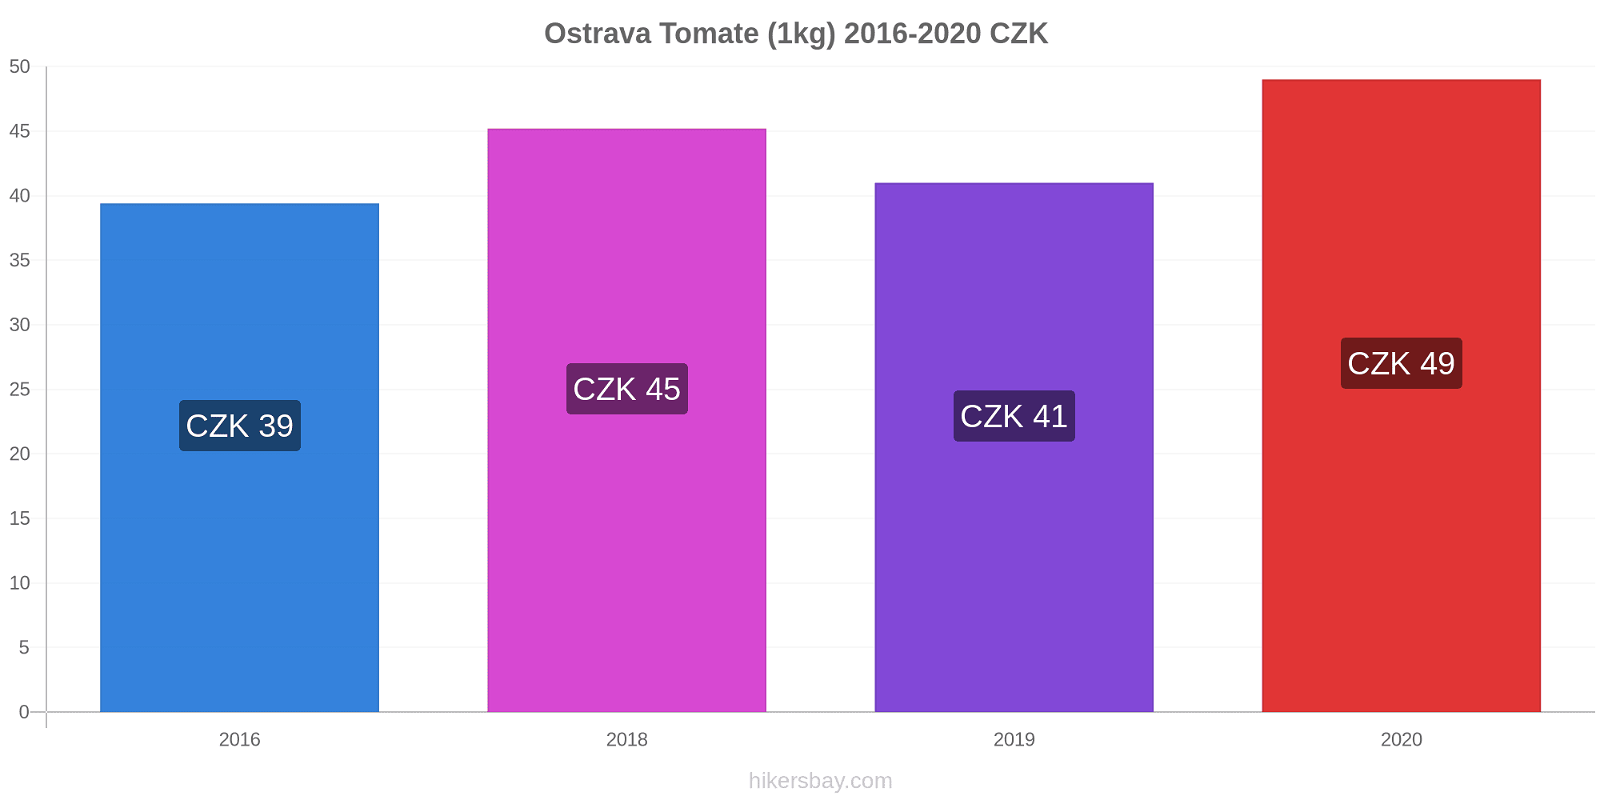 Ostrava variação de preço Tomate (1kg) hikersbay.com